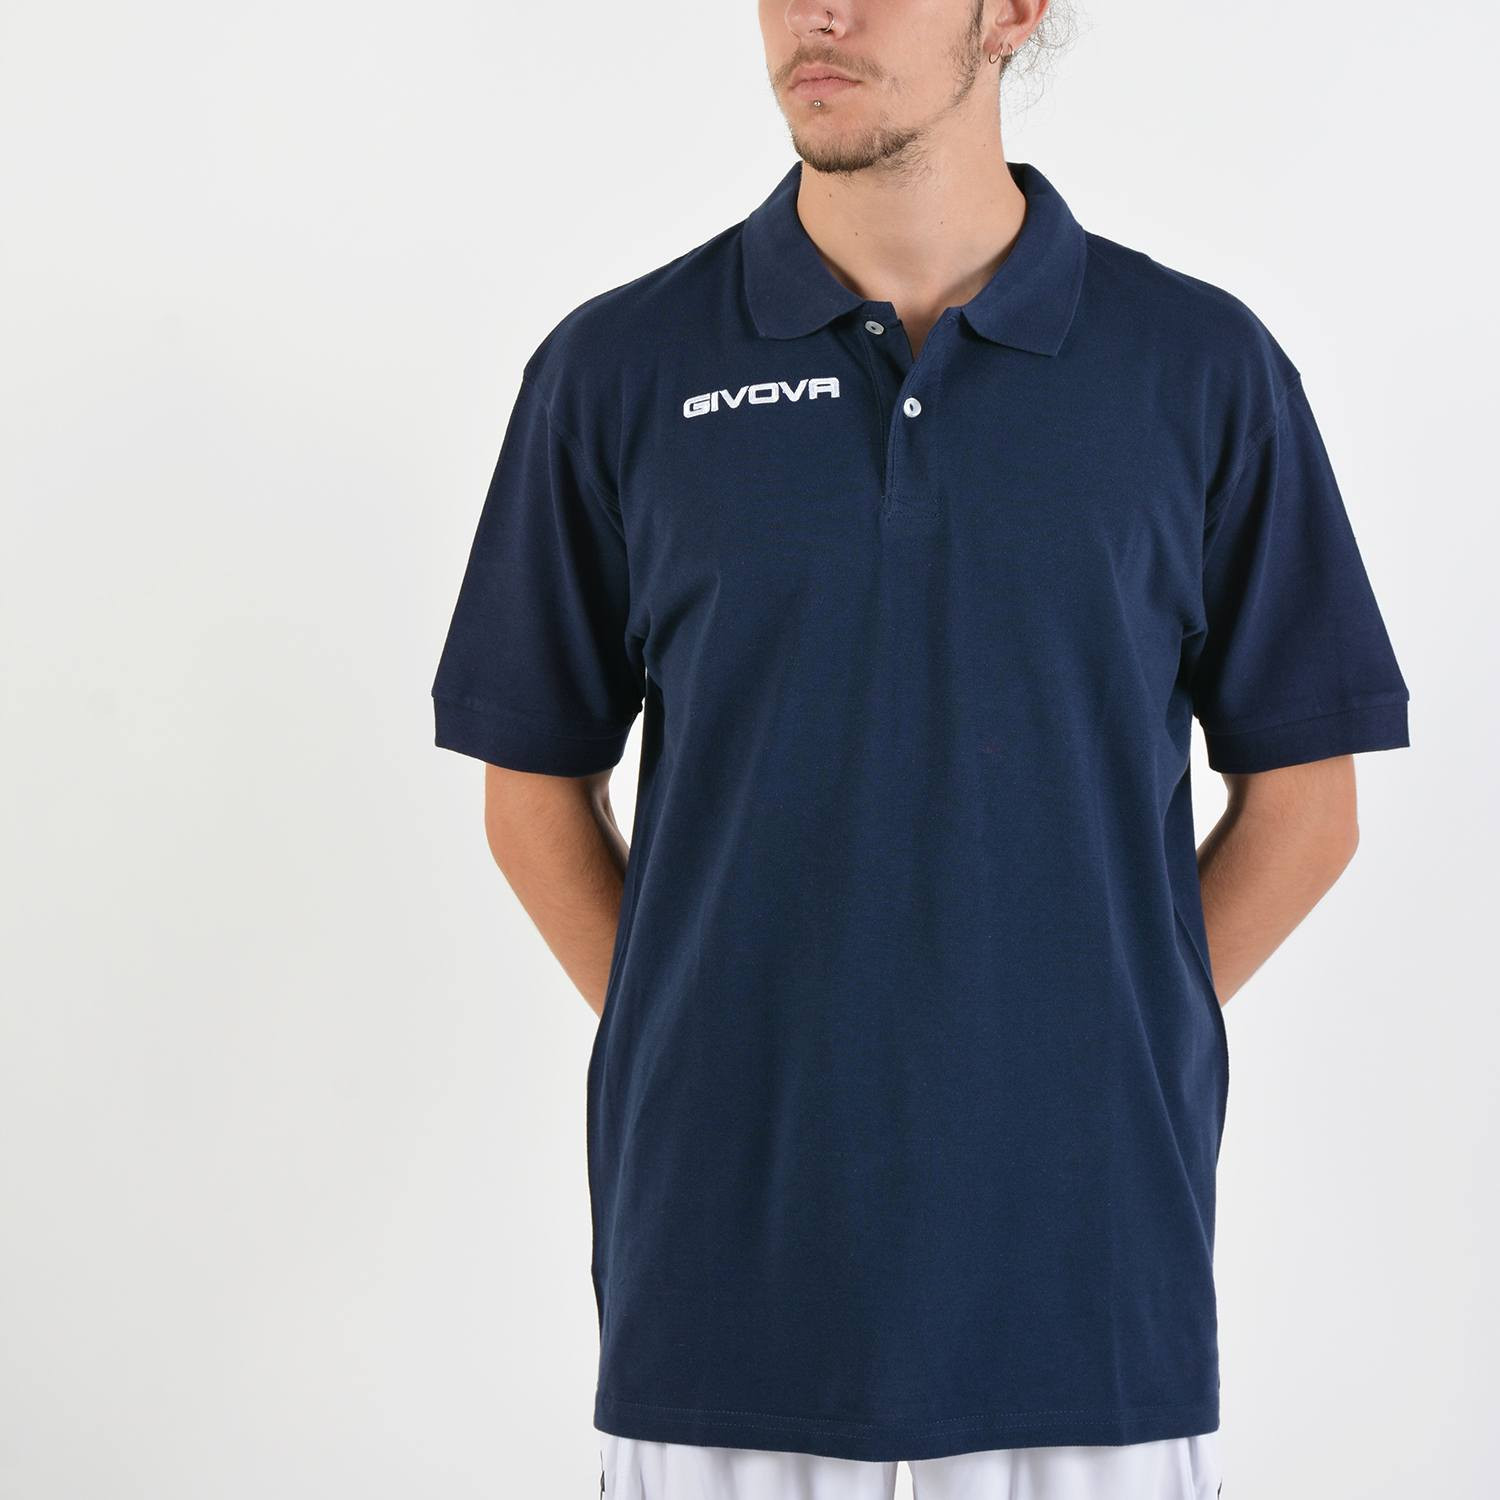 Givova Men's Polo T-Shirt - Ανδρική Polo Μπλούζα (9000020712_3024)